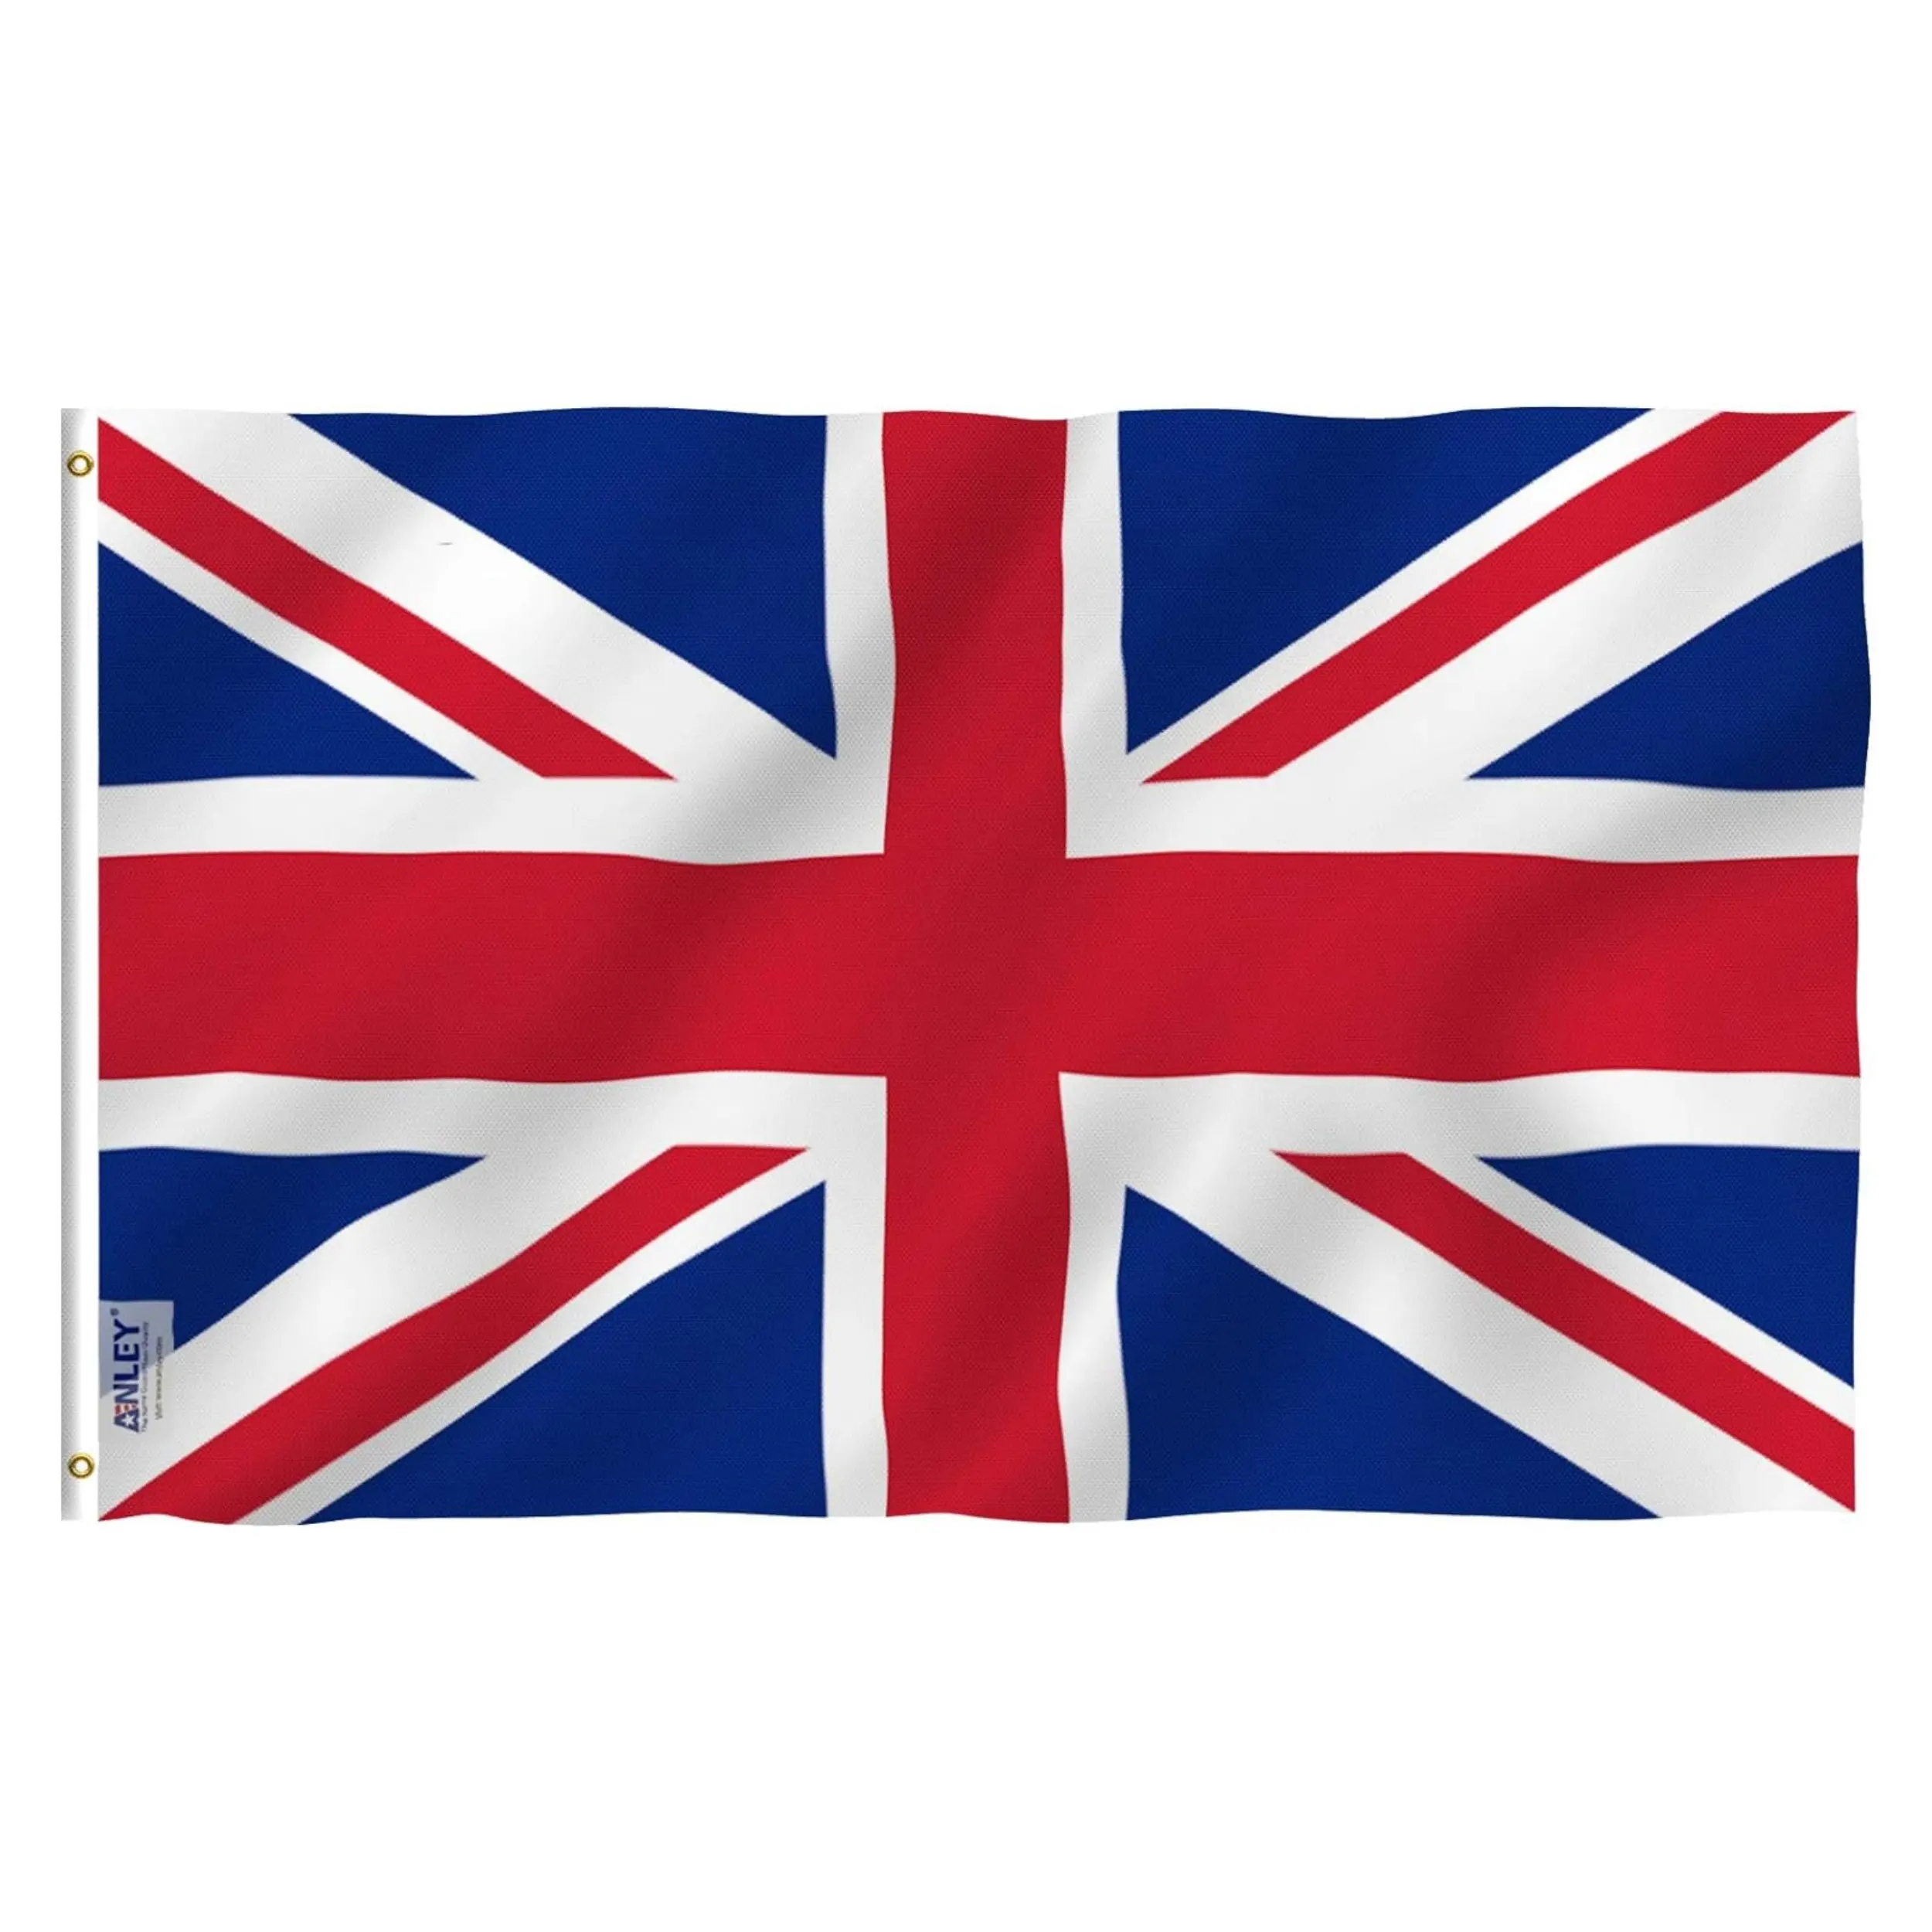 Оптовая продажа 3x5 футов полиэстер Великобритания Национальный флаг всей страны Англия Соединенное Королевство Британский флаг 3x5 футов Юнион Джек флаг